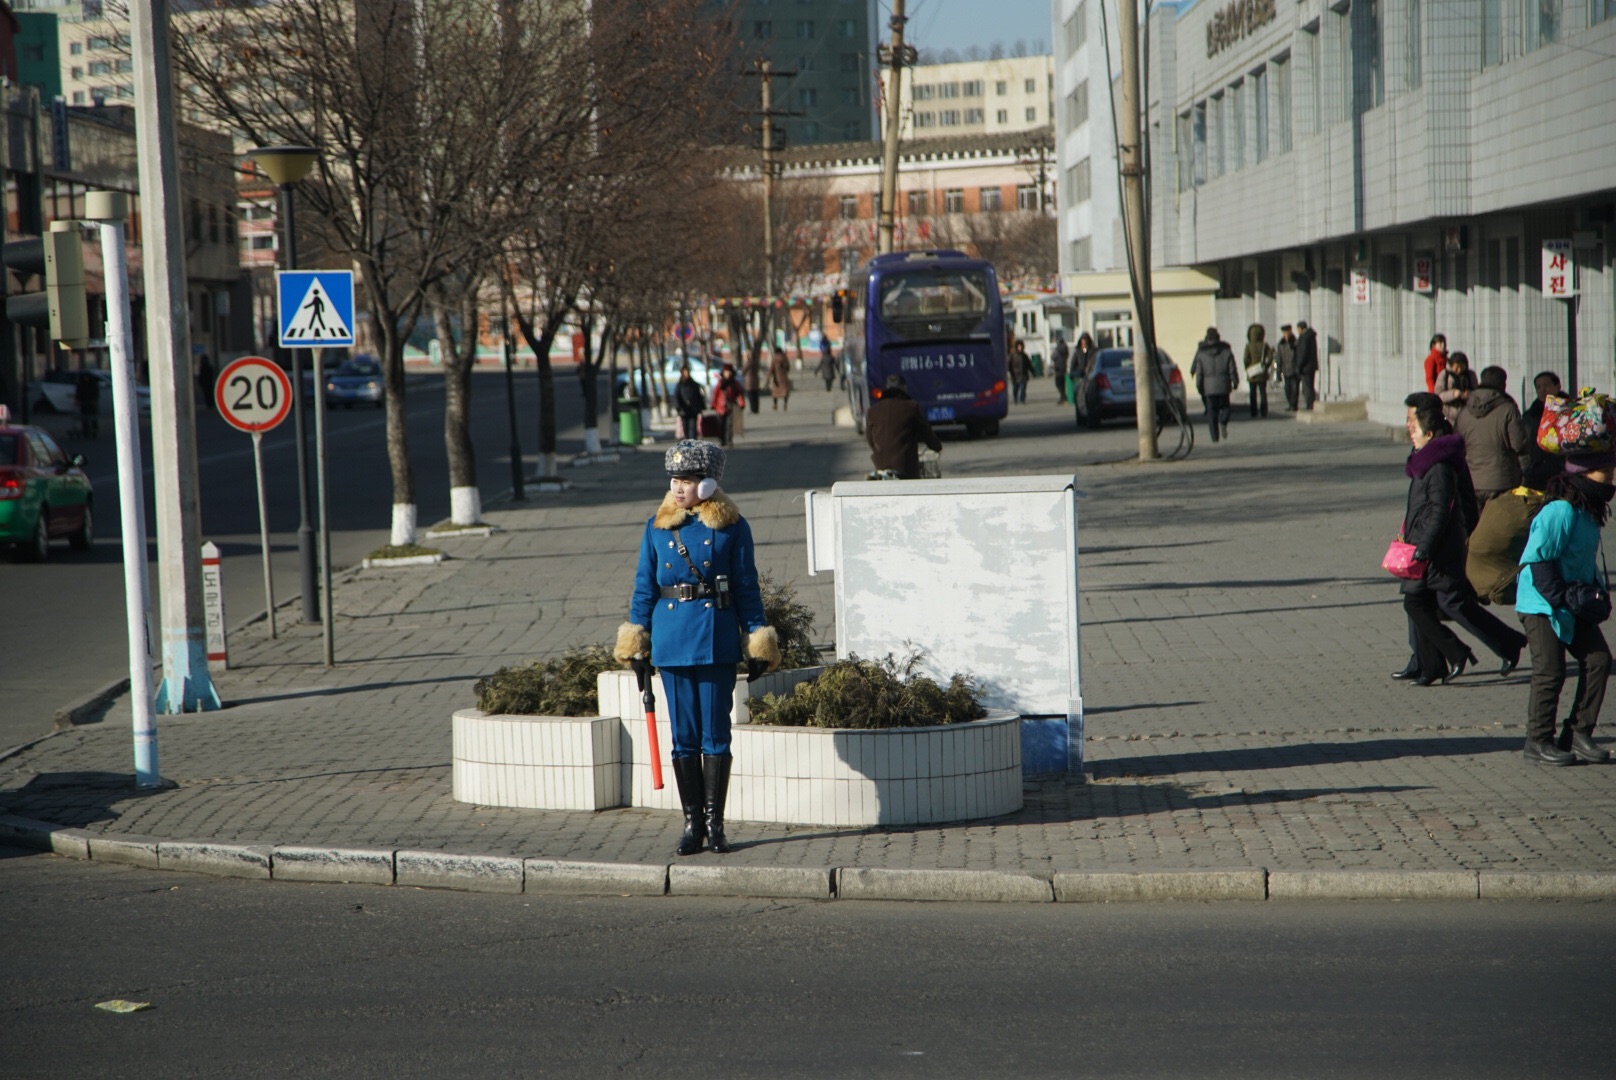 朝鲜街拍图片